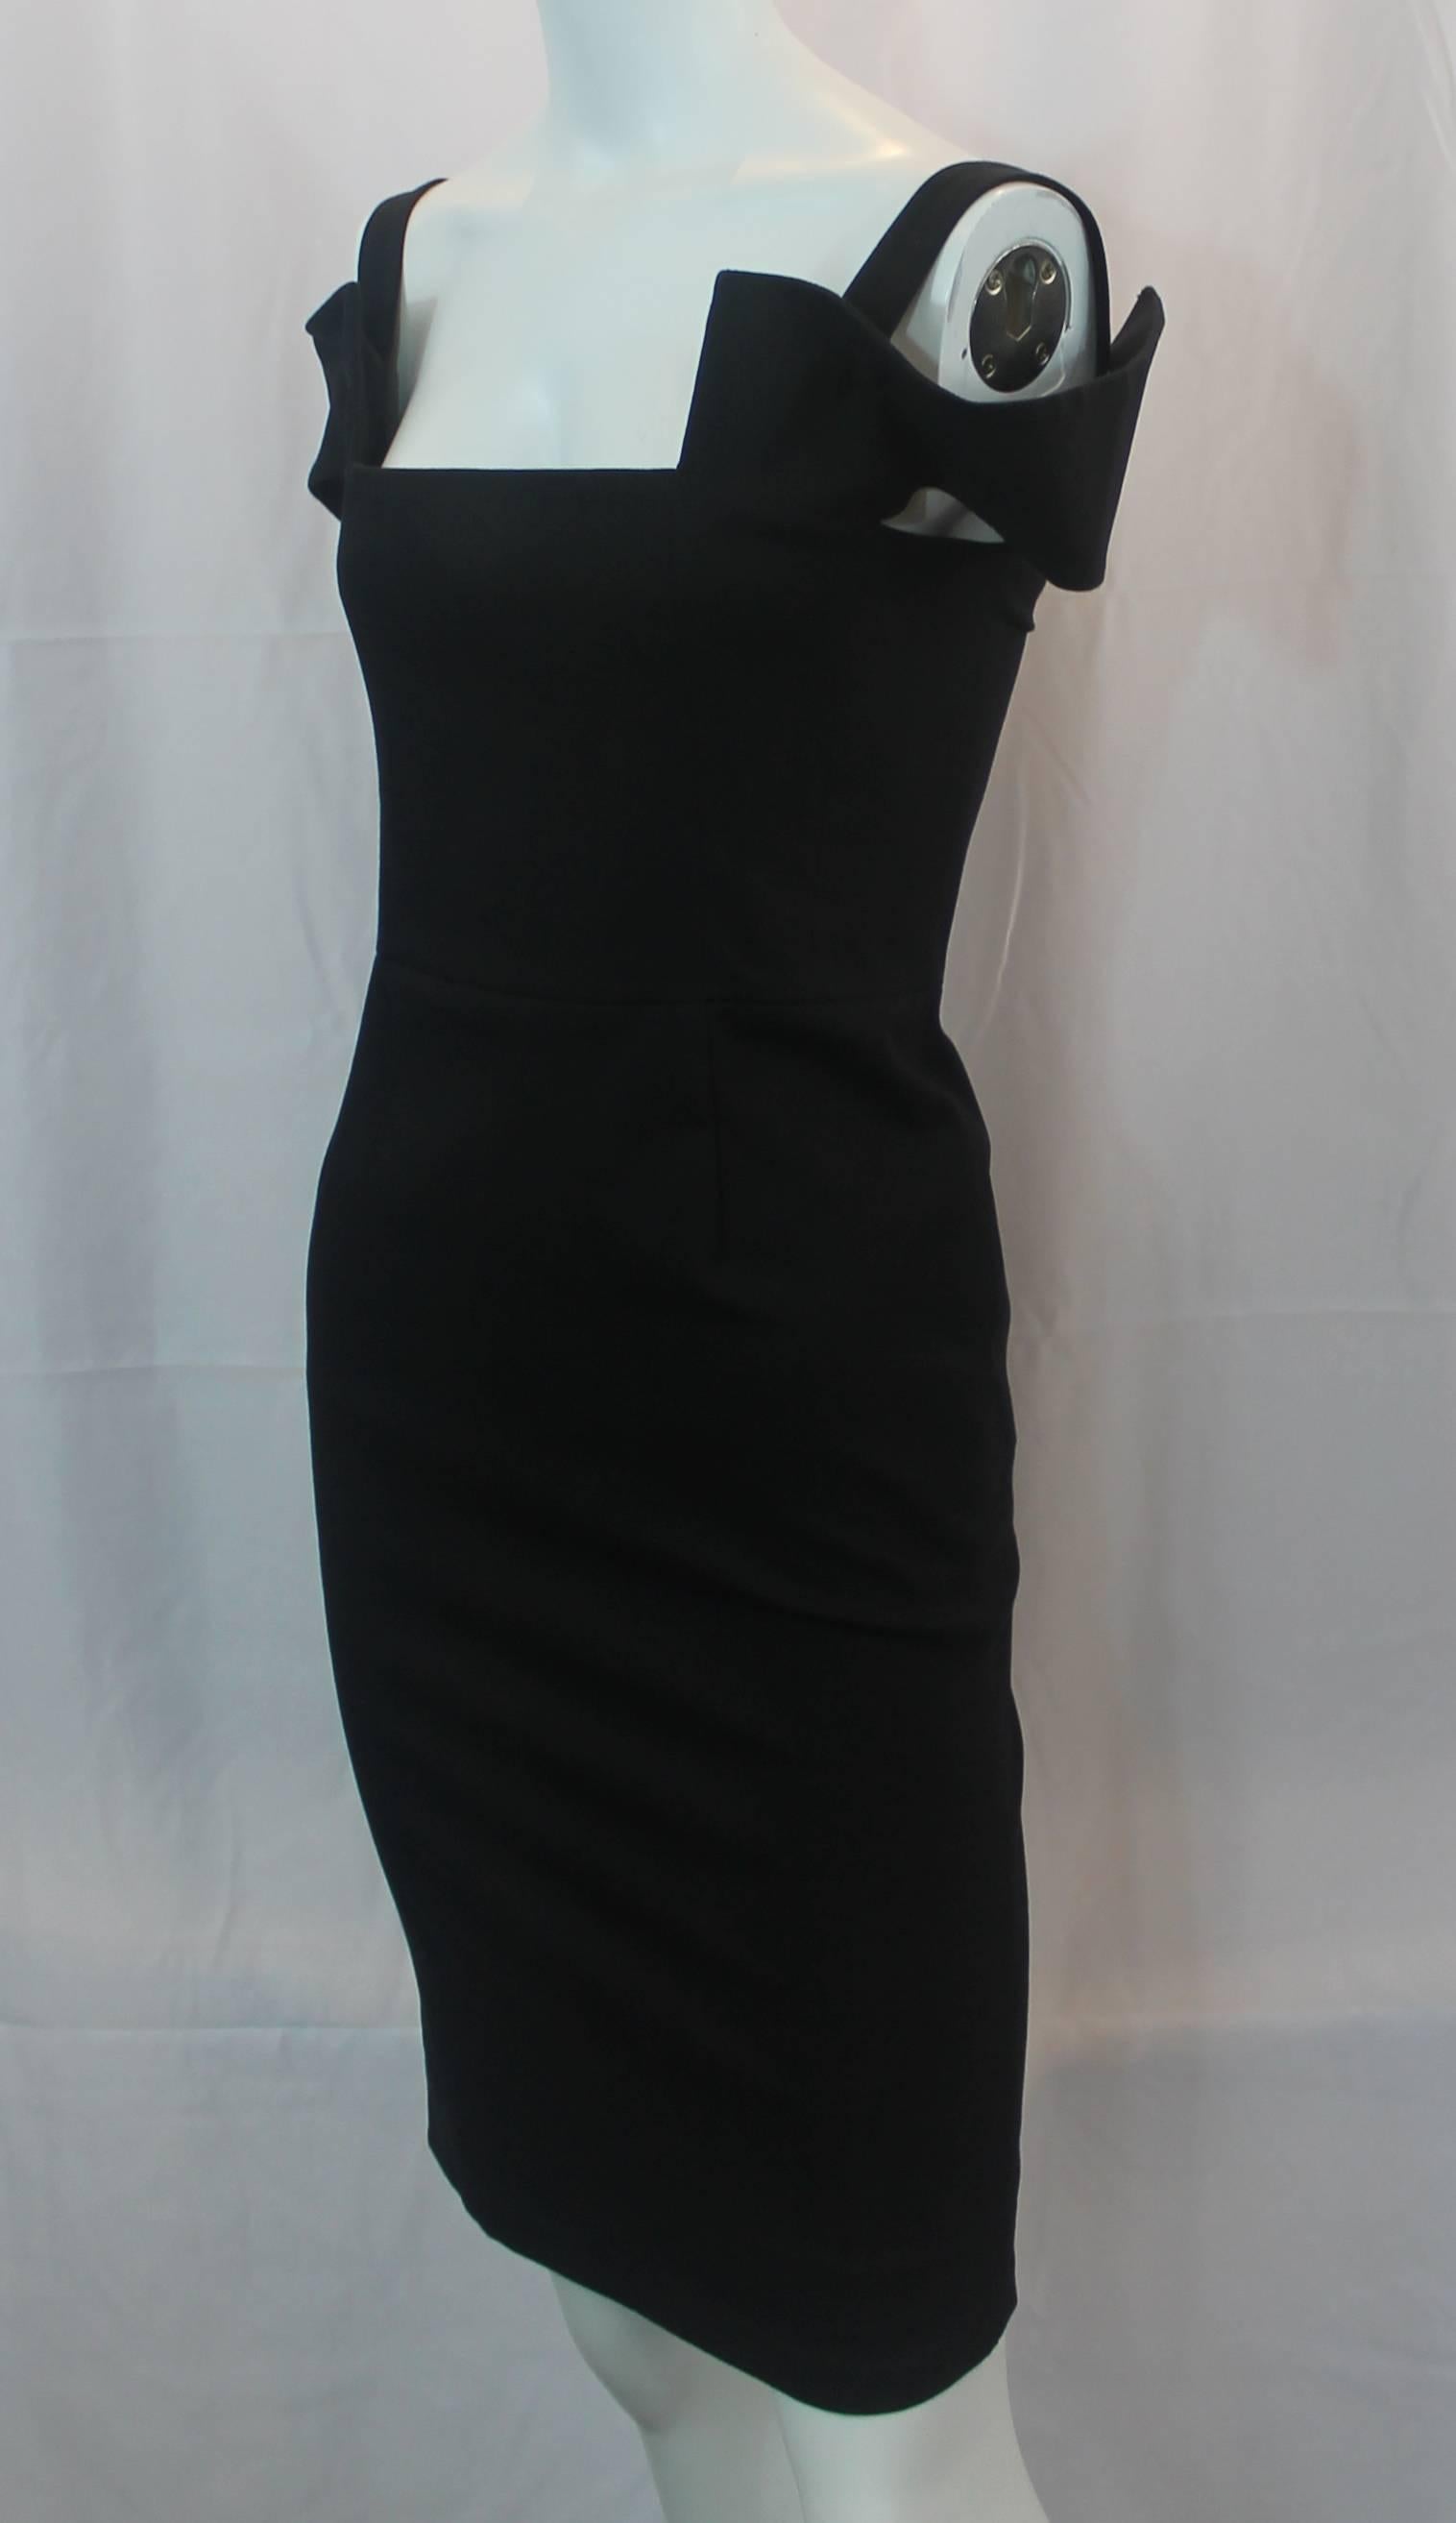 Schwarzes Kleid aus einer Baumwollmischung von Fendi mit Ausschnitten - 40. Dieses schicke, taillierte Kleid hat einen geraden Ausschnitt und Cutouts an den Ärmeln. Auf der Rückseite befindet sich ein Reißverschluss und ein Ausschnitt. Dieses Kleid